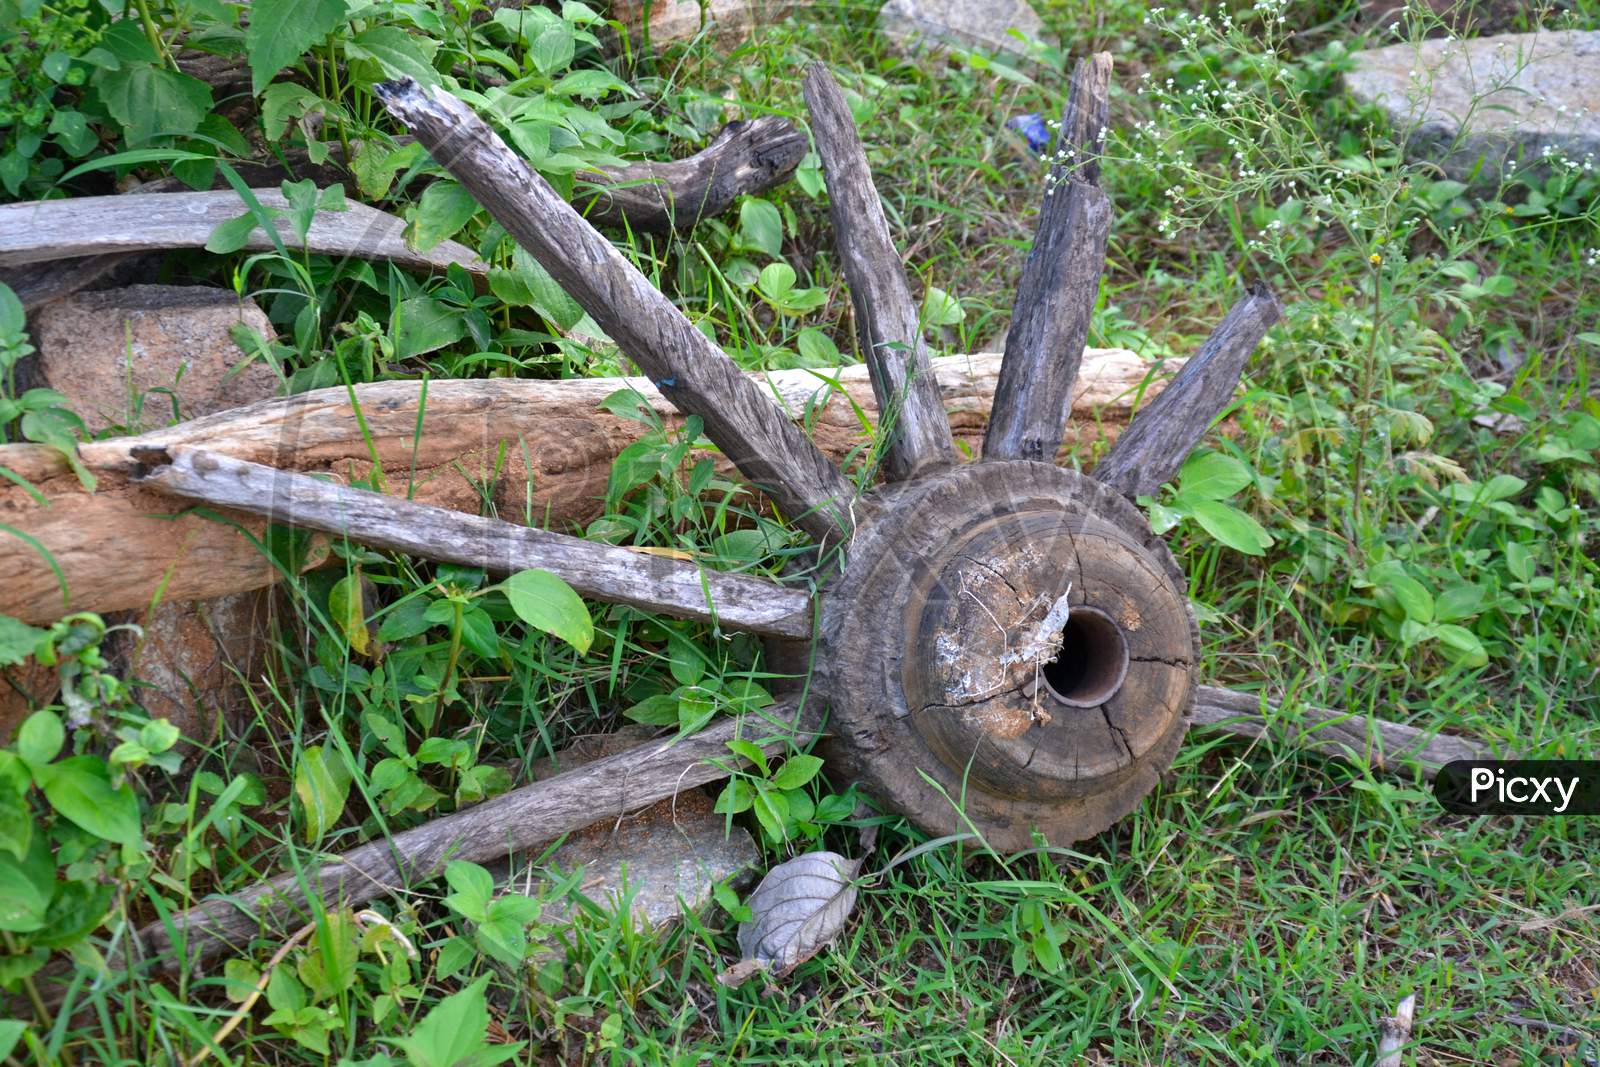 A broken wooden wheel lying in wilderness